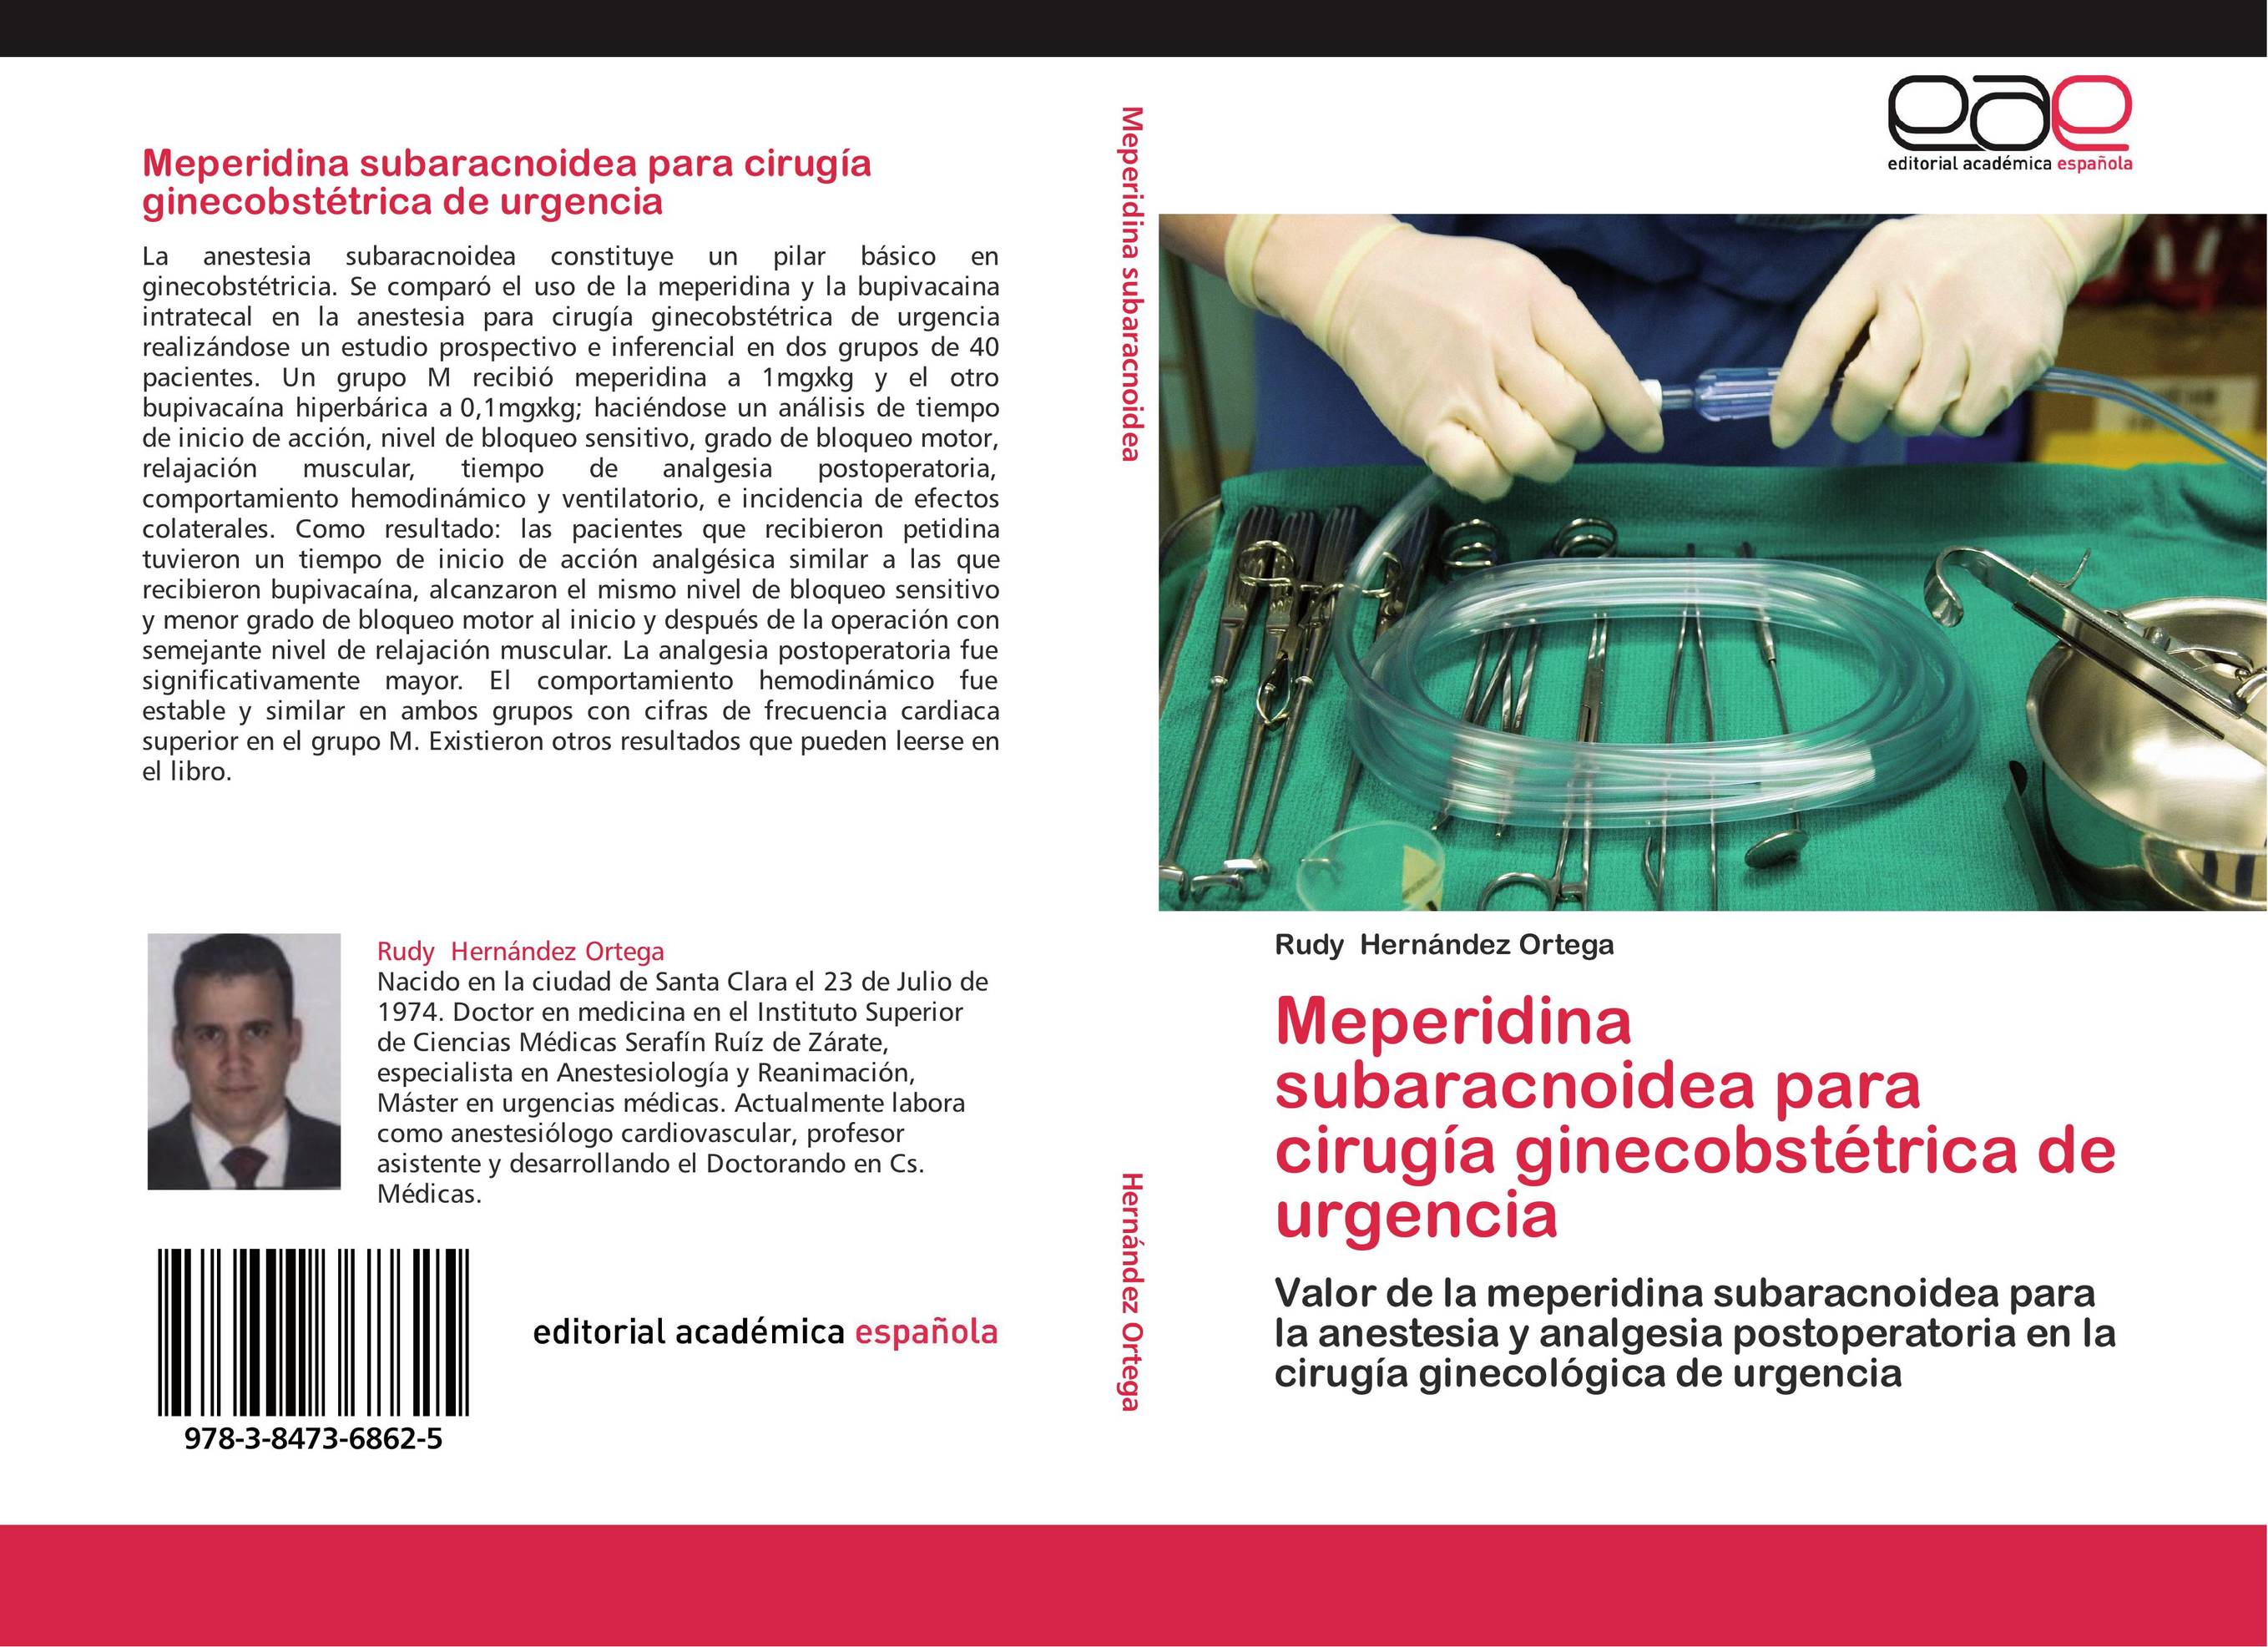 Meperidina subaracnoidea para cirugía ginecobstétrica de urgencia